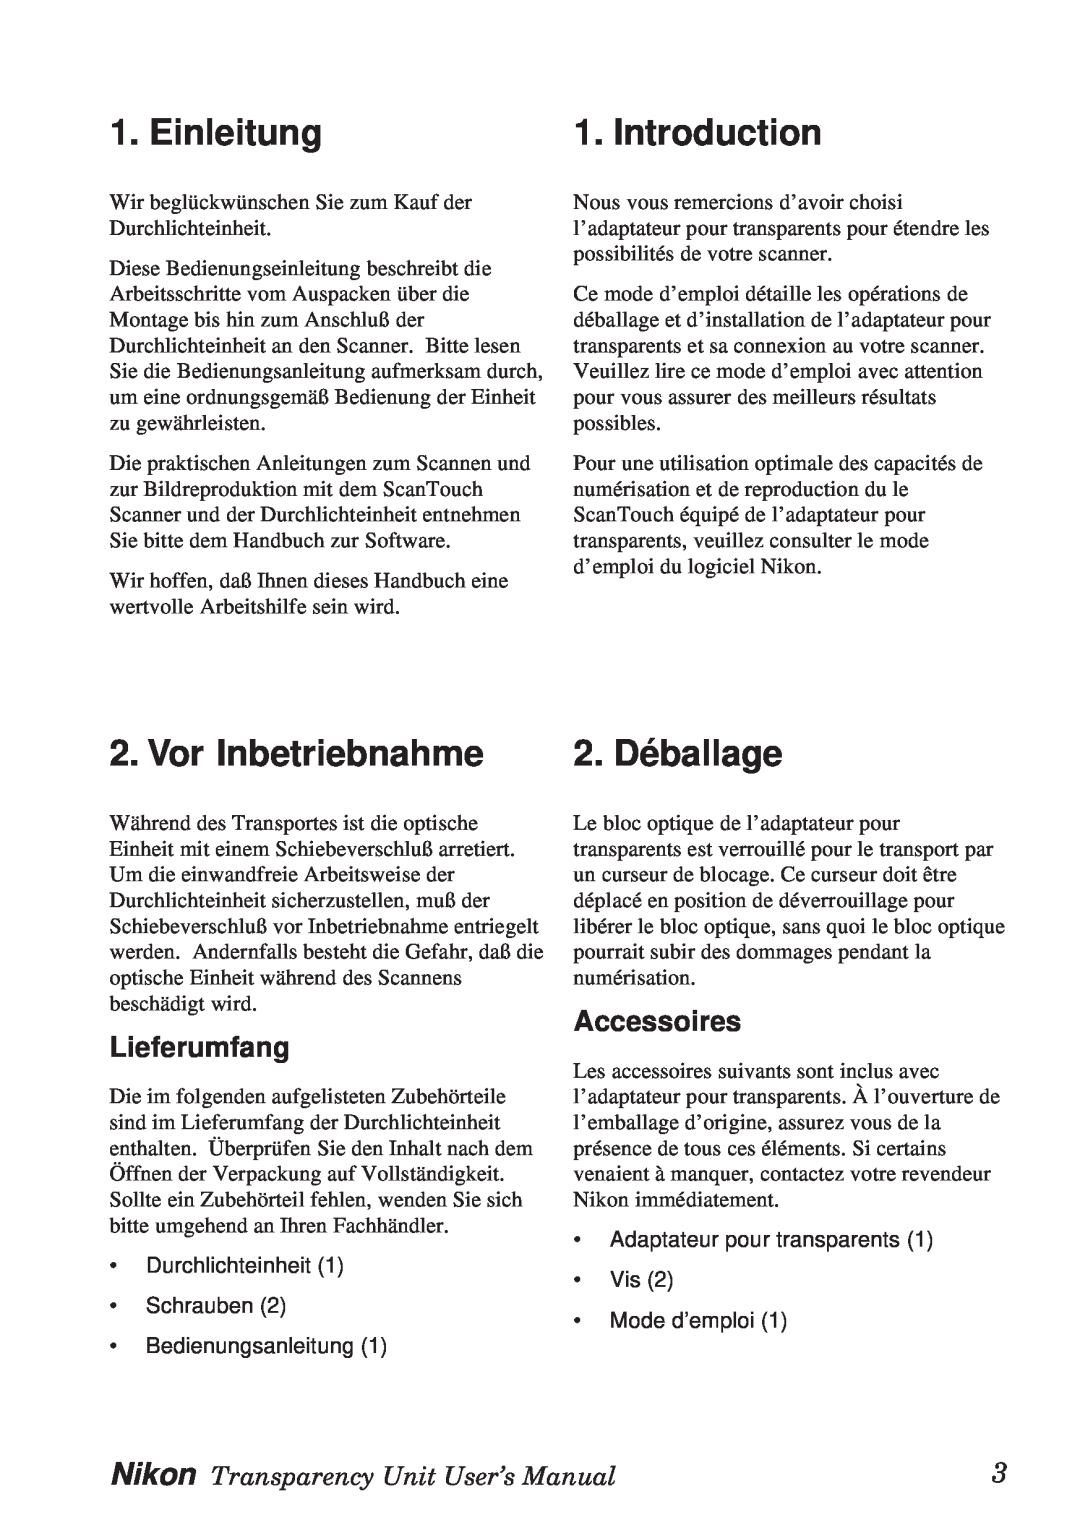 Nikon Transparency Unit manual Einleitung, Vor Inbetriebnahme, Introduction, 2. Déballage, Lieferumfang, Accessoires 